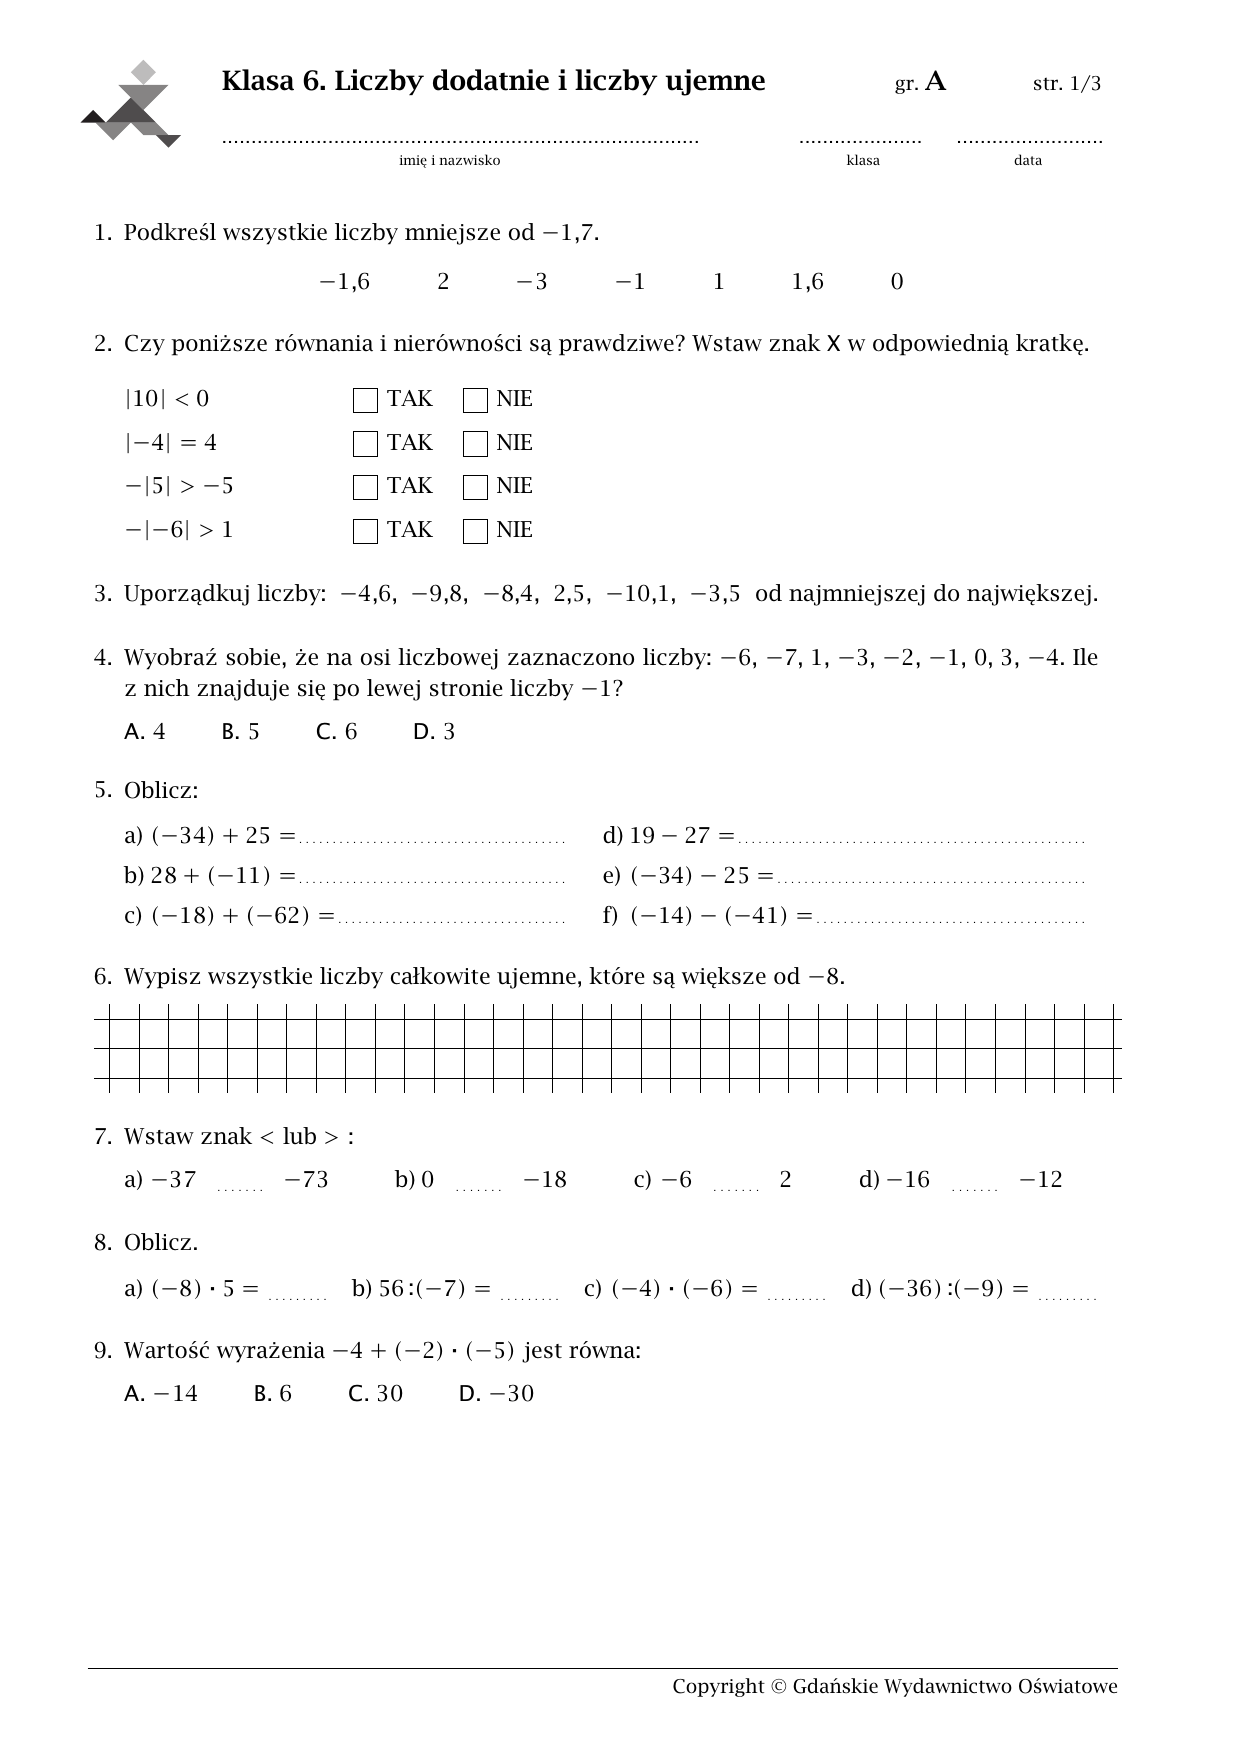 Działania Na Liczbach Klasa 6 Matematyka z kluczem klasa 6. Liczby dodatnie i liczby ujemne